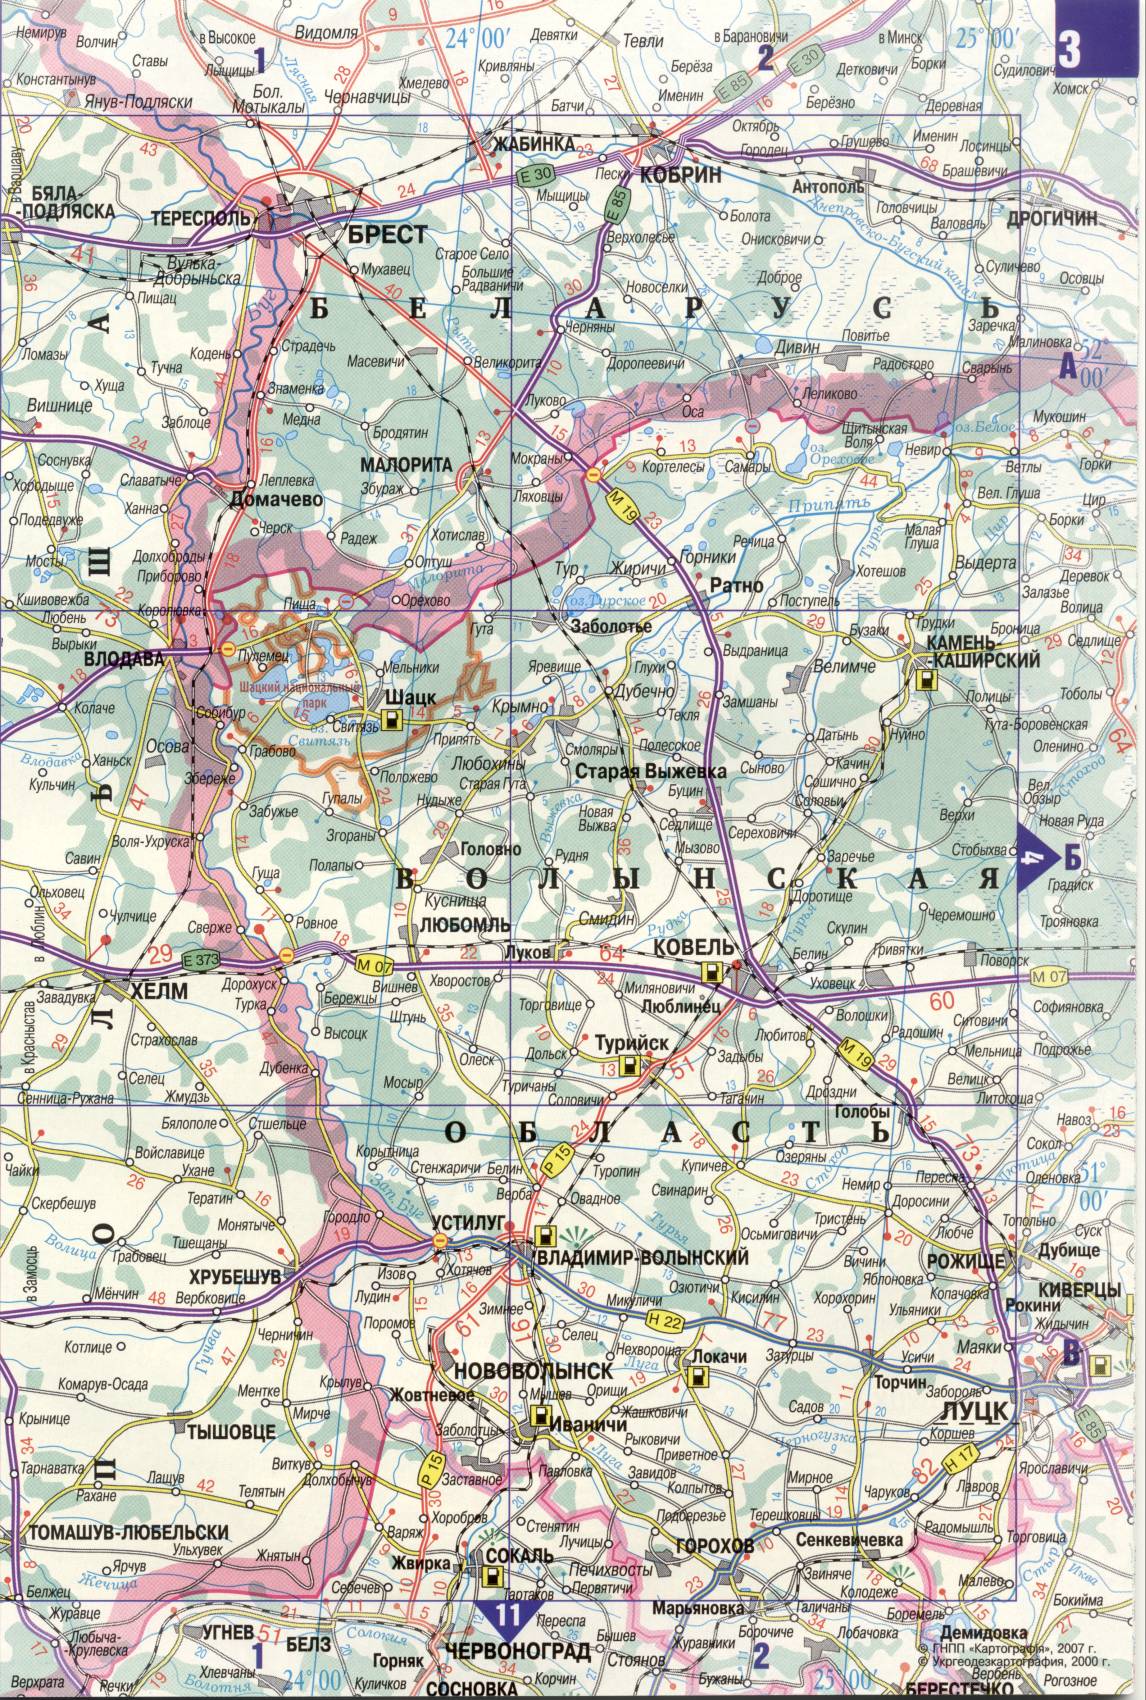 Карта Украины. Подробная карта дорог Украина из автомобильног атласа. скачать бесплатно, B0